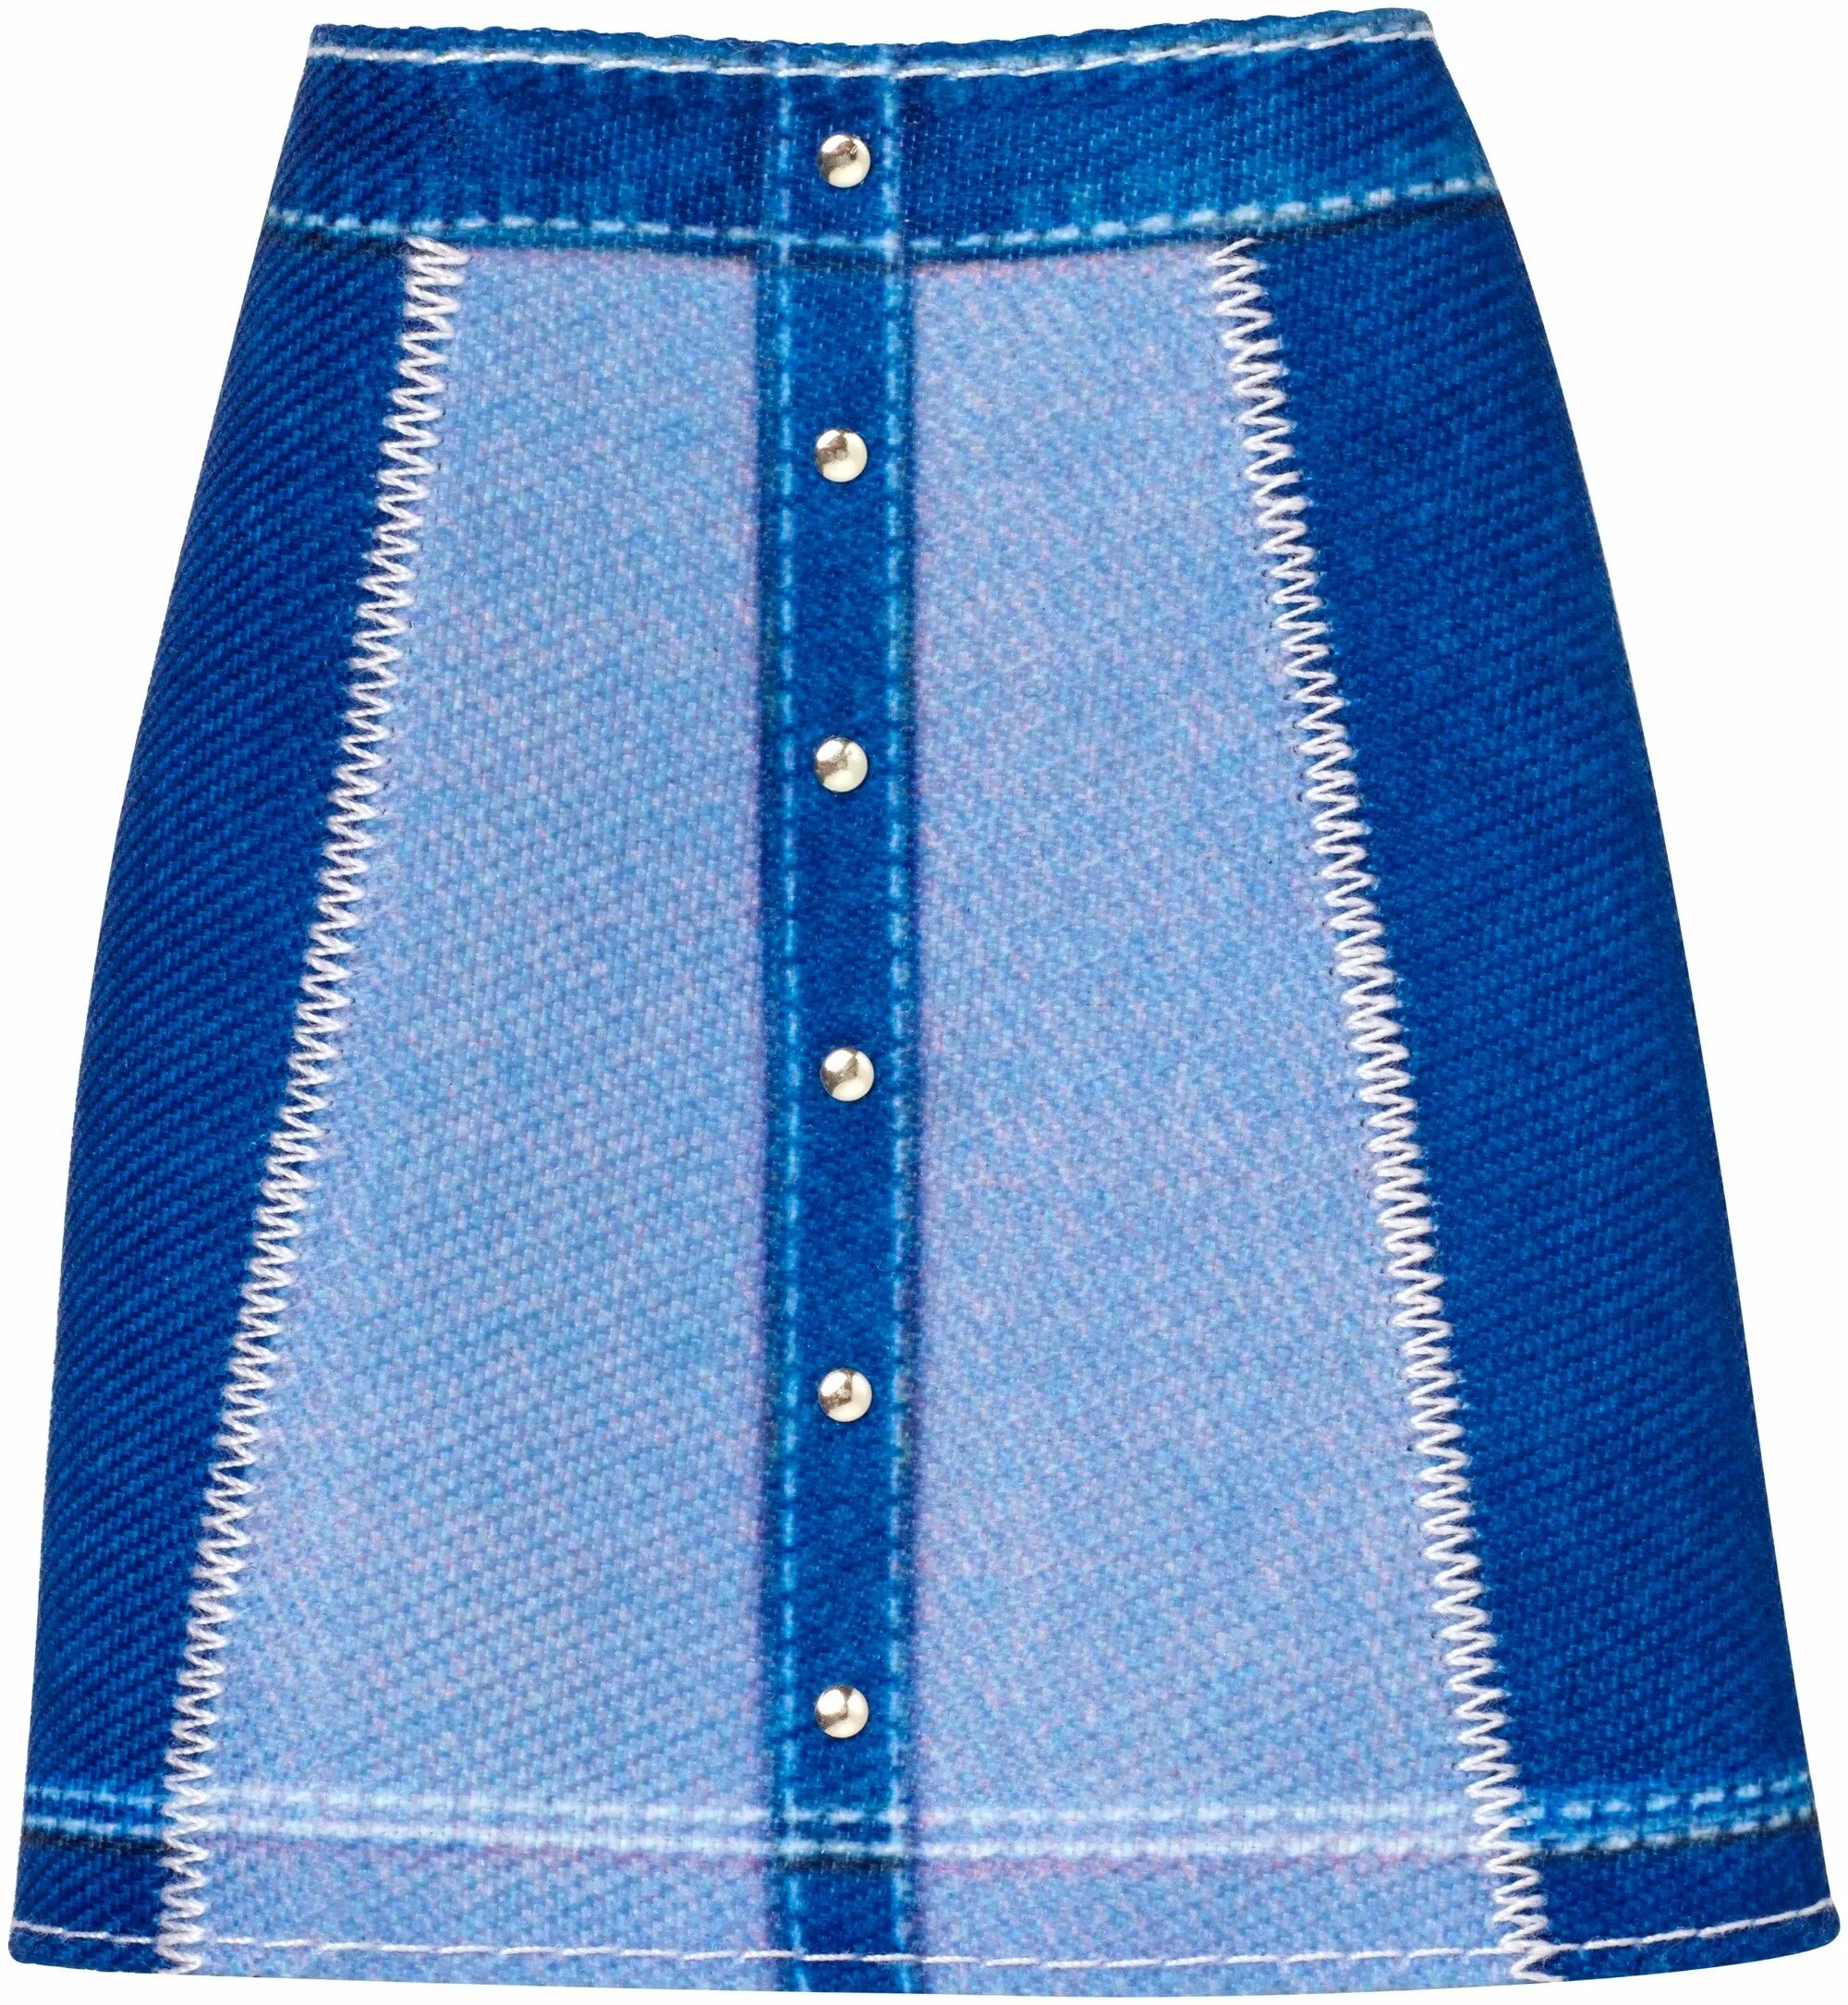 Джинсовая юбка синий. Барби в джинсовой юбке. Юбка для куклы. Джинсовая юбка для куклы. Детские джинсовые юбки.